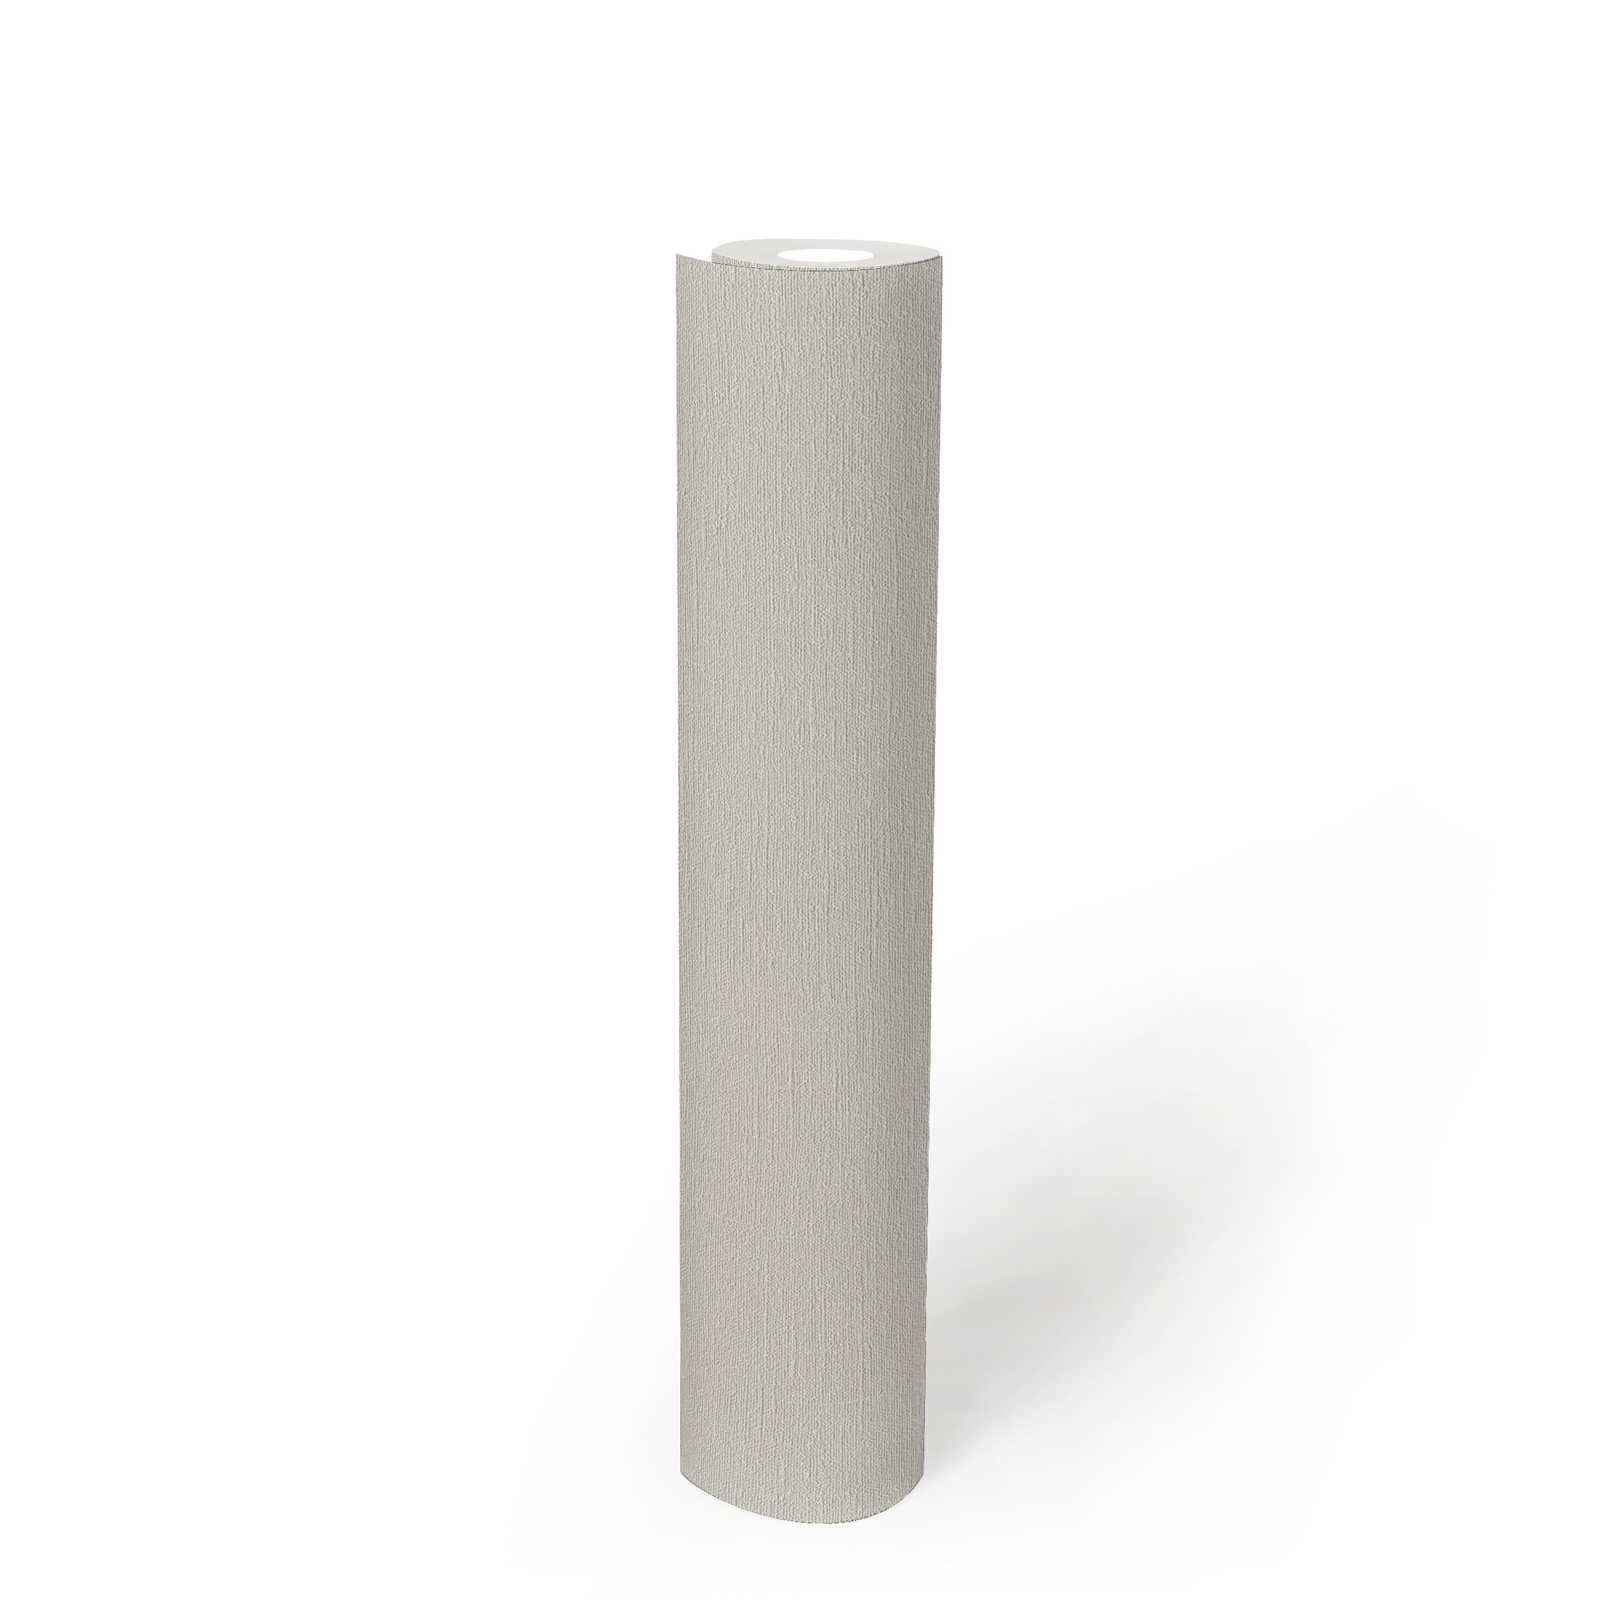             Fine textured wallpaper PVC-free - grey, white
        